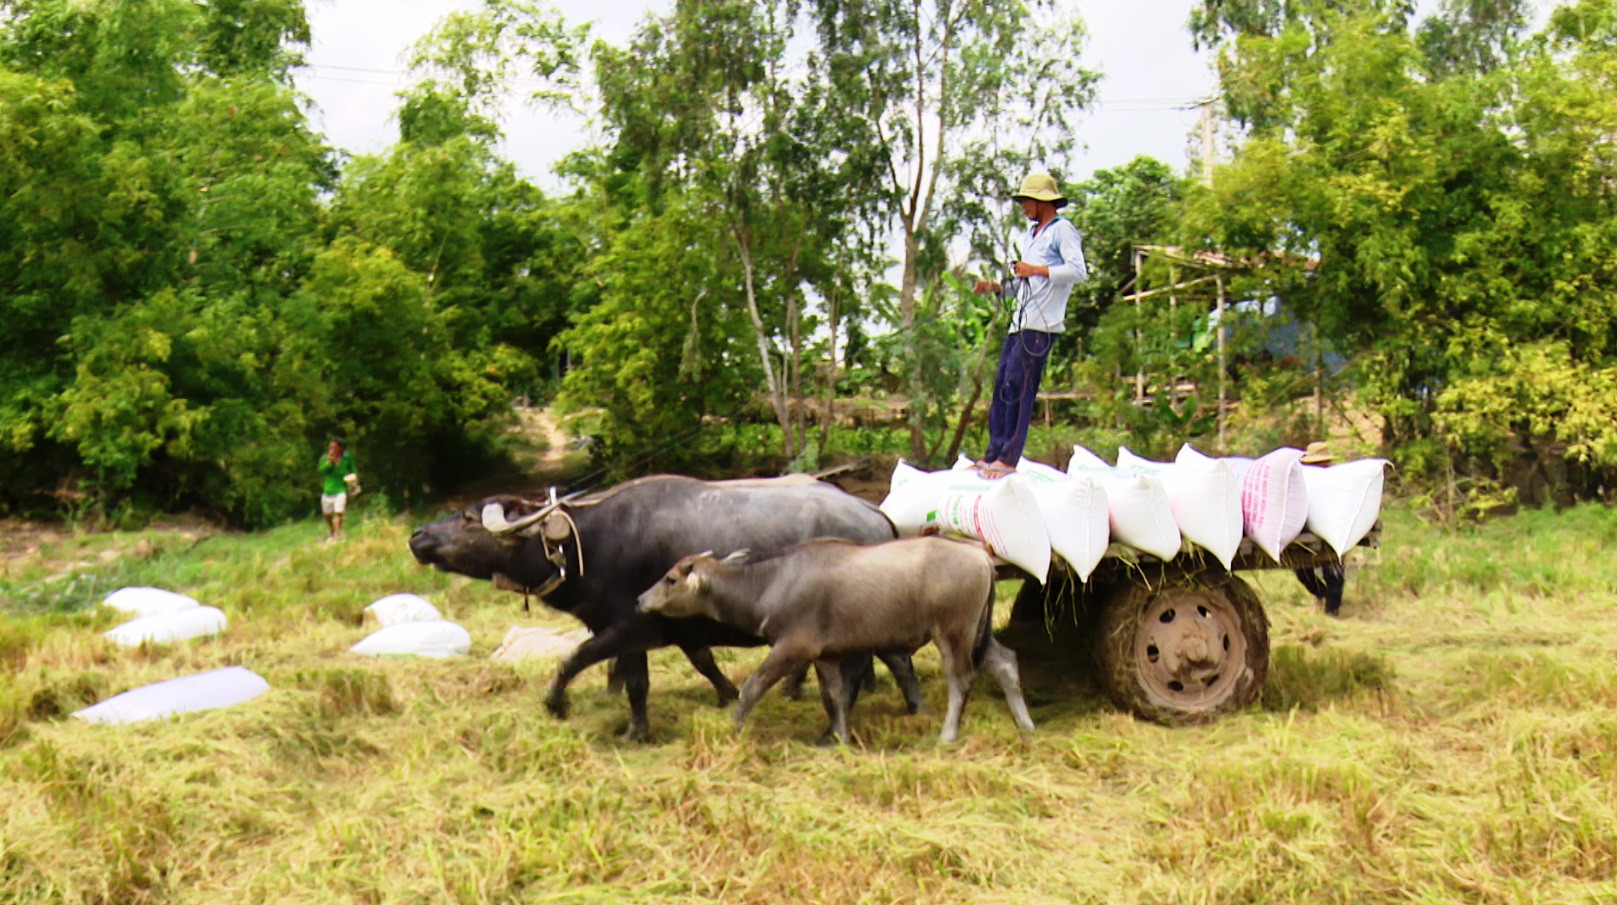 Trâu kéo lúa ở miền Tây giữ lại nét văn hóa nông nghiệp Nam bộ ...